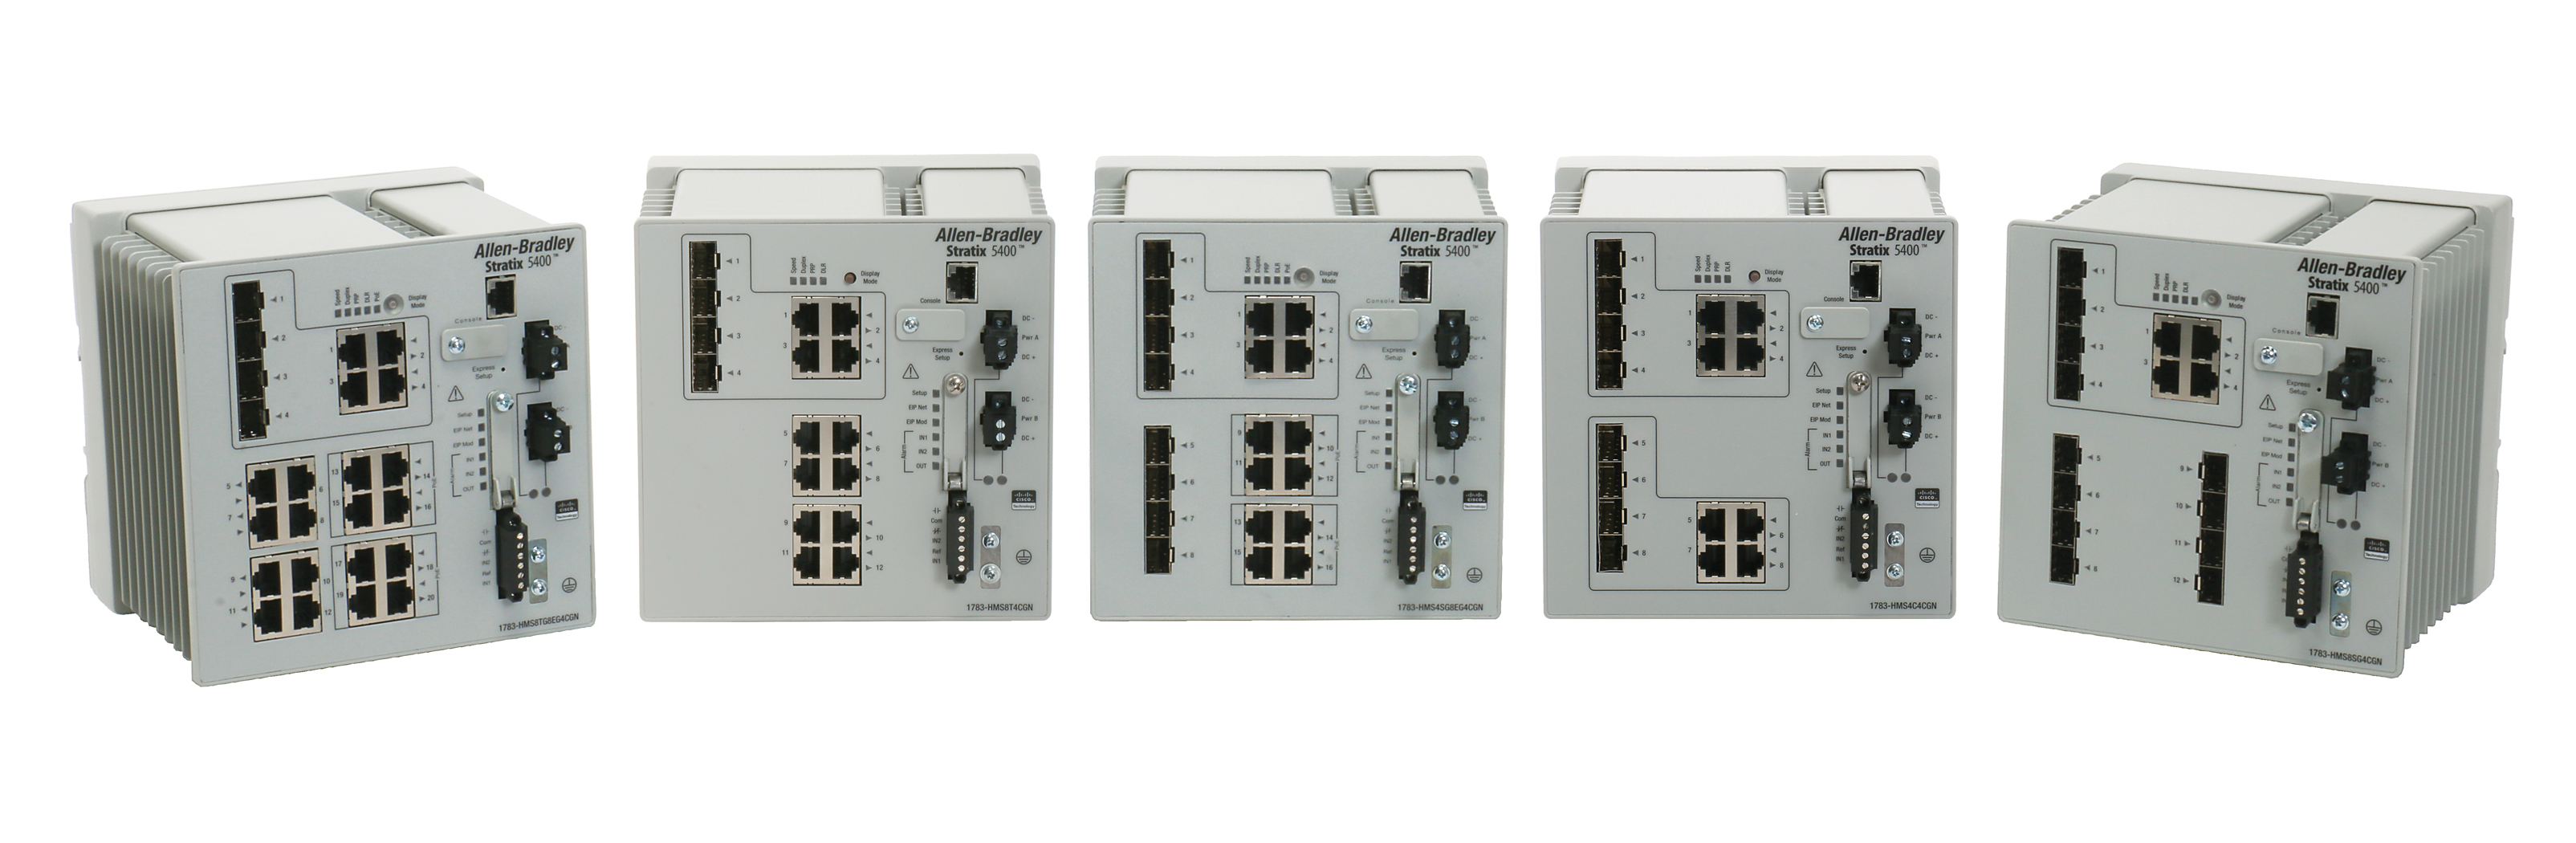 罗克韦尔新型全千兆 Stratix 5400 工业交换机助力制造商满足网络带宽不断提高的需求